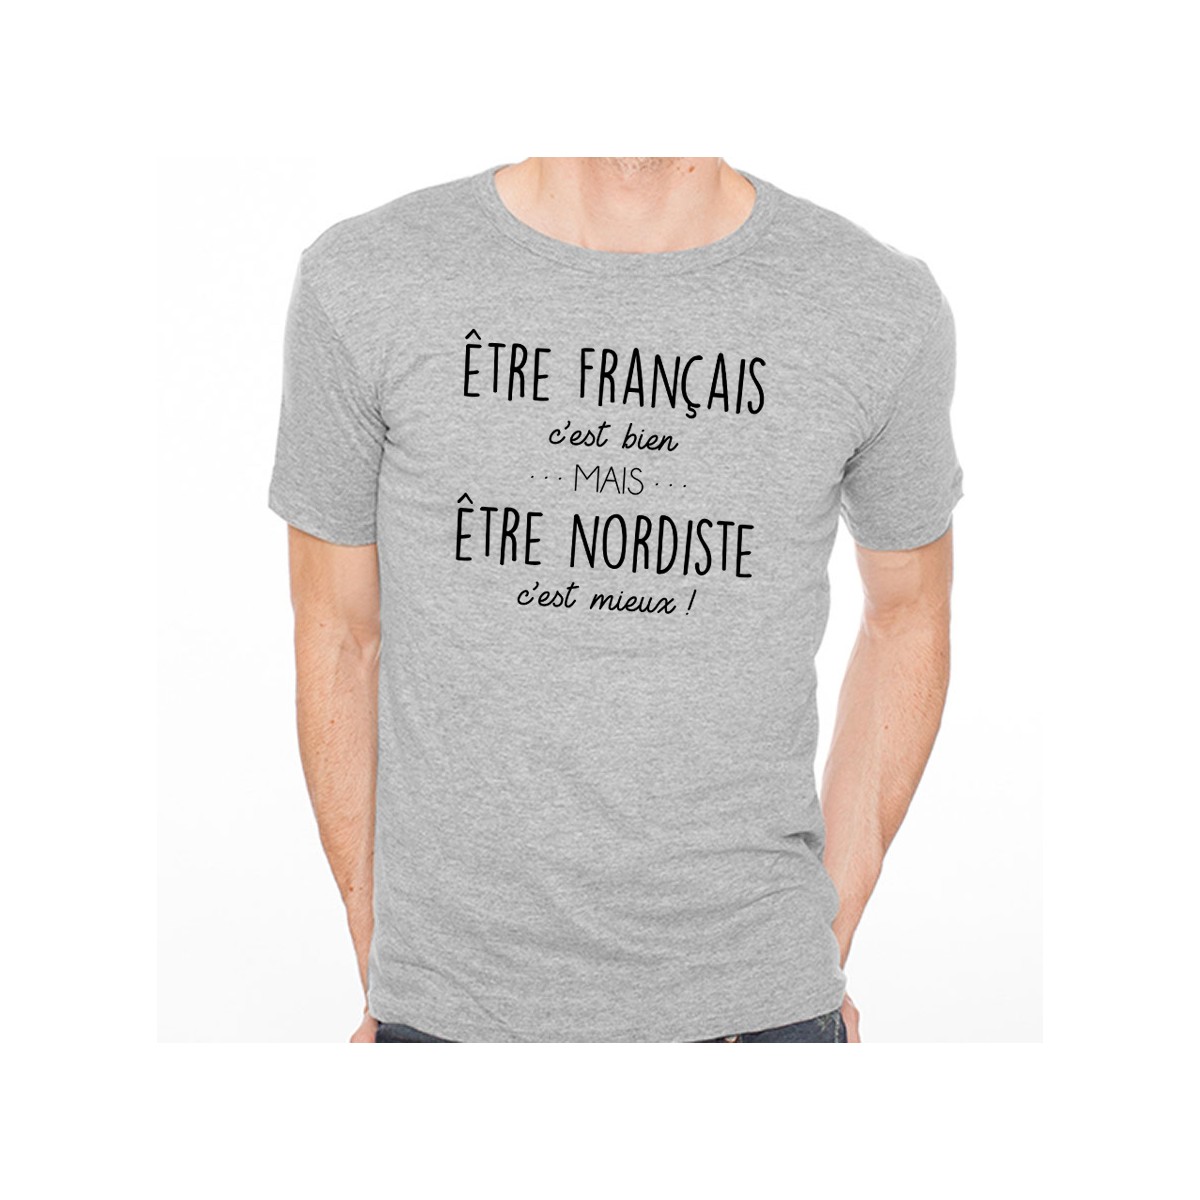 T-shirt Être Nordiste c'est mieux